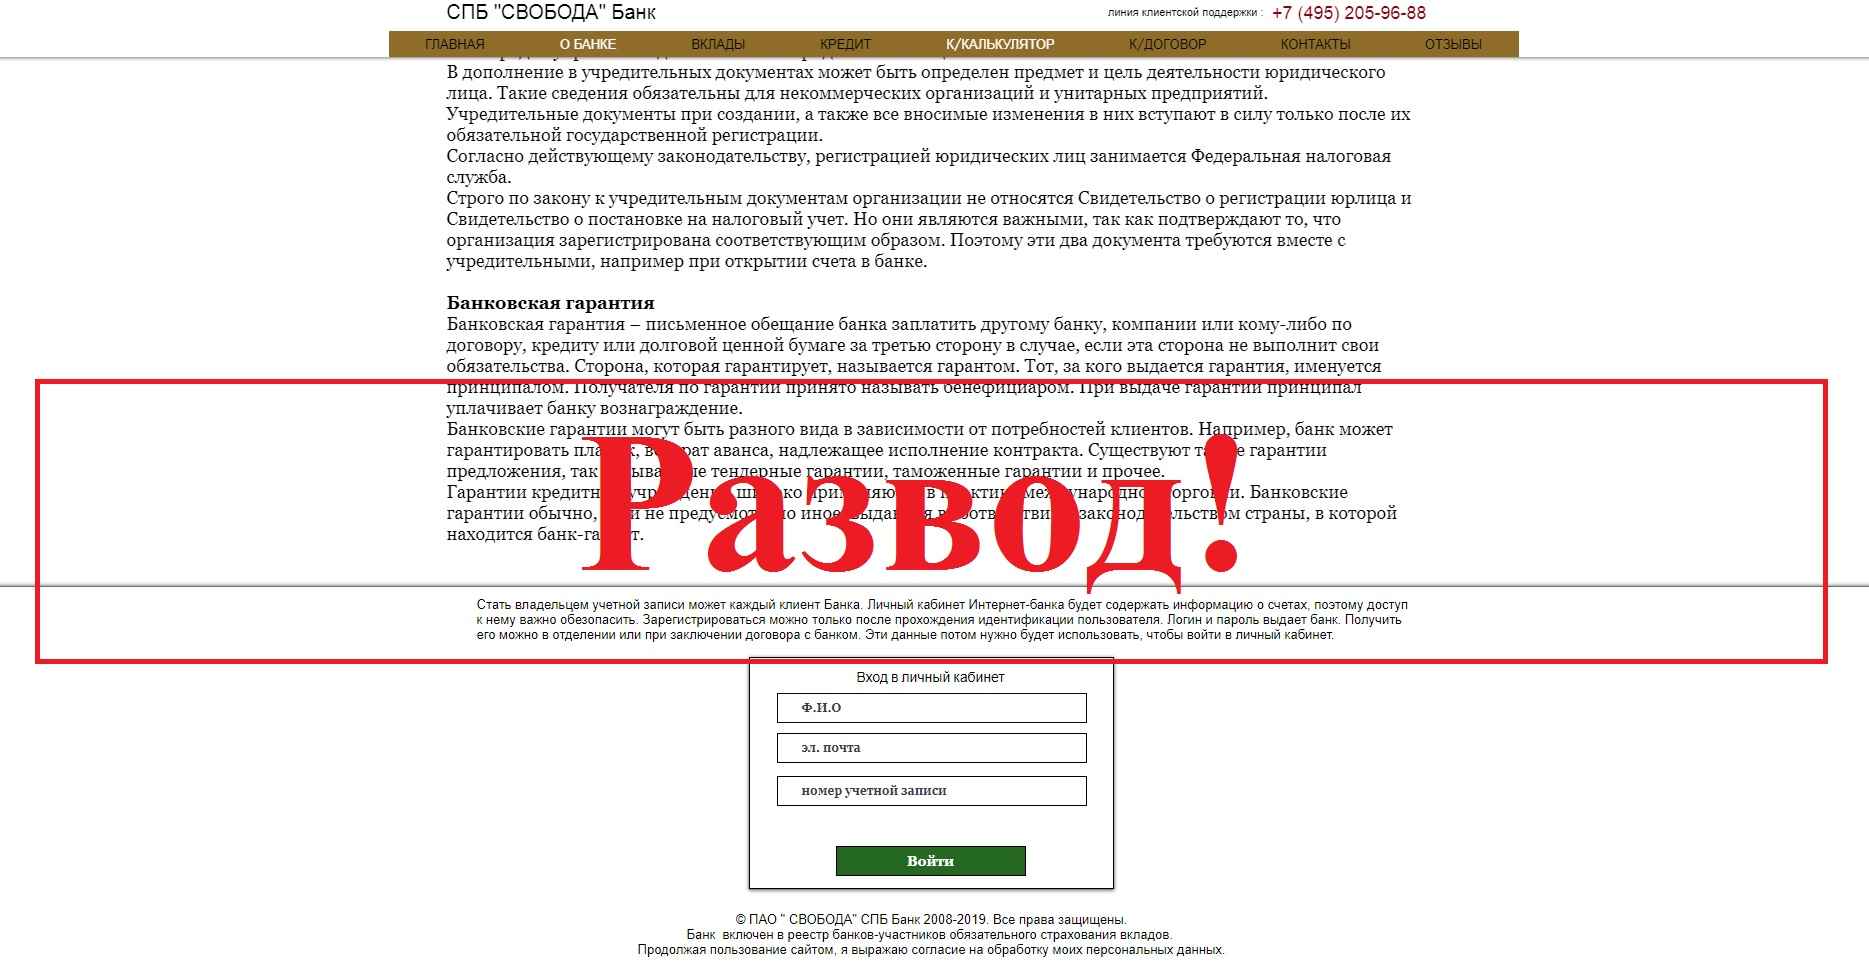 кредит одобрен рус отзывы отправить заявки во все банки на кредит с плохой ки